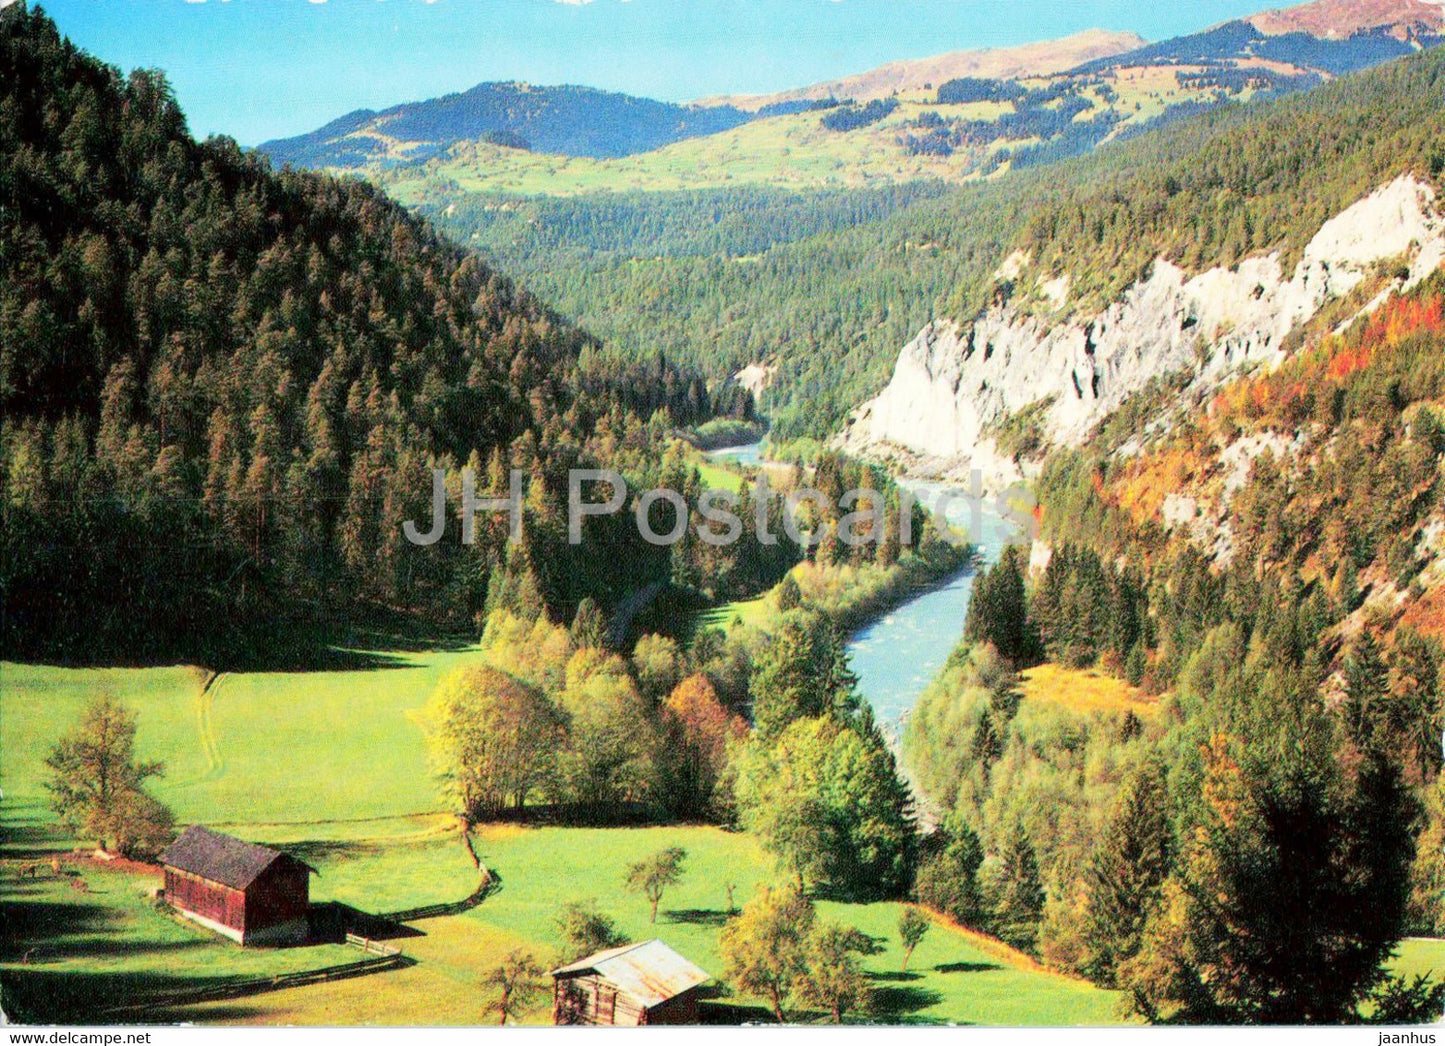 Hinterrhein - GR - Switzerland - unused - JH Postcards